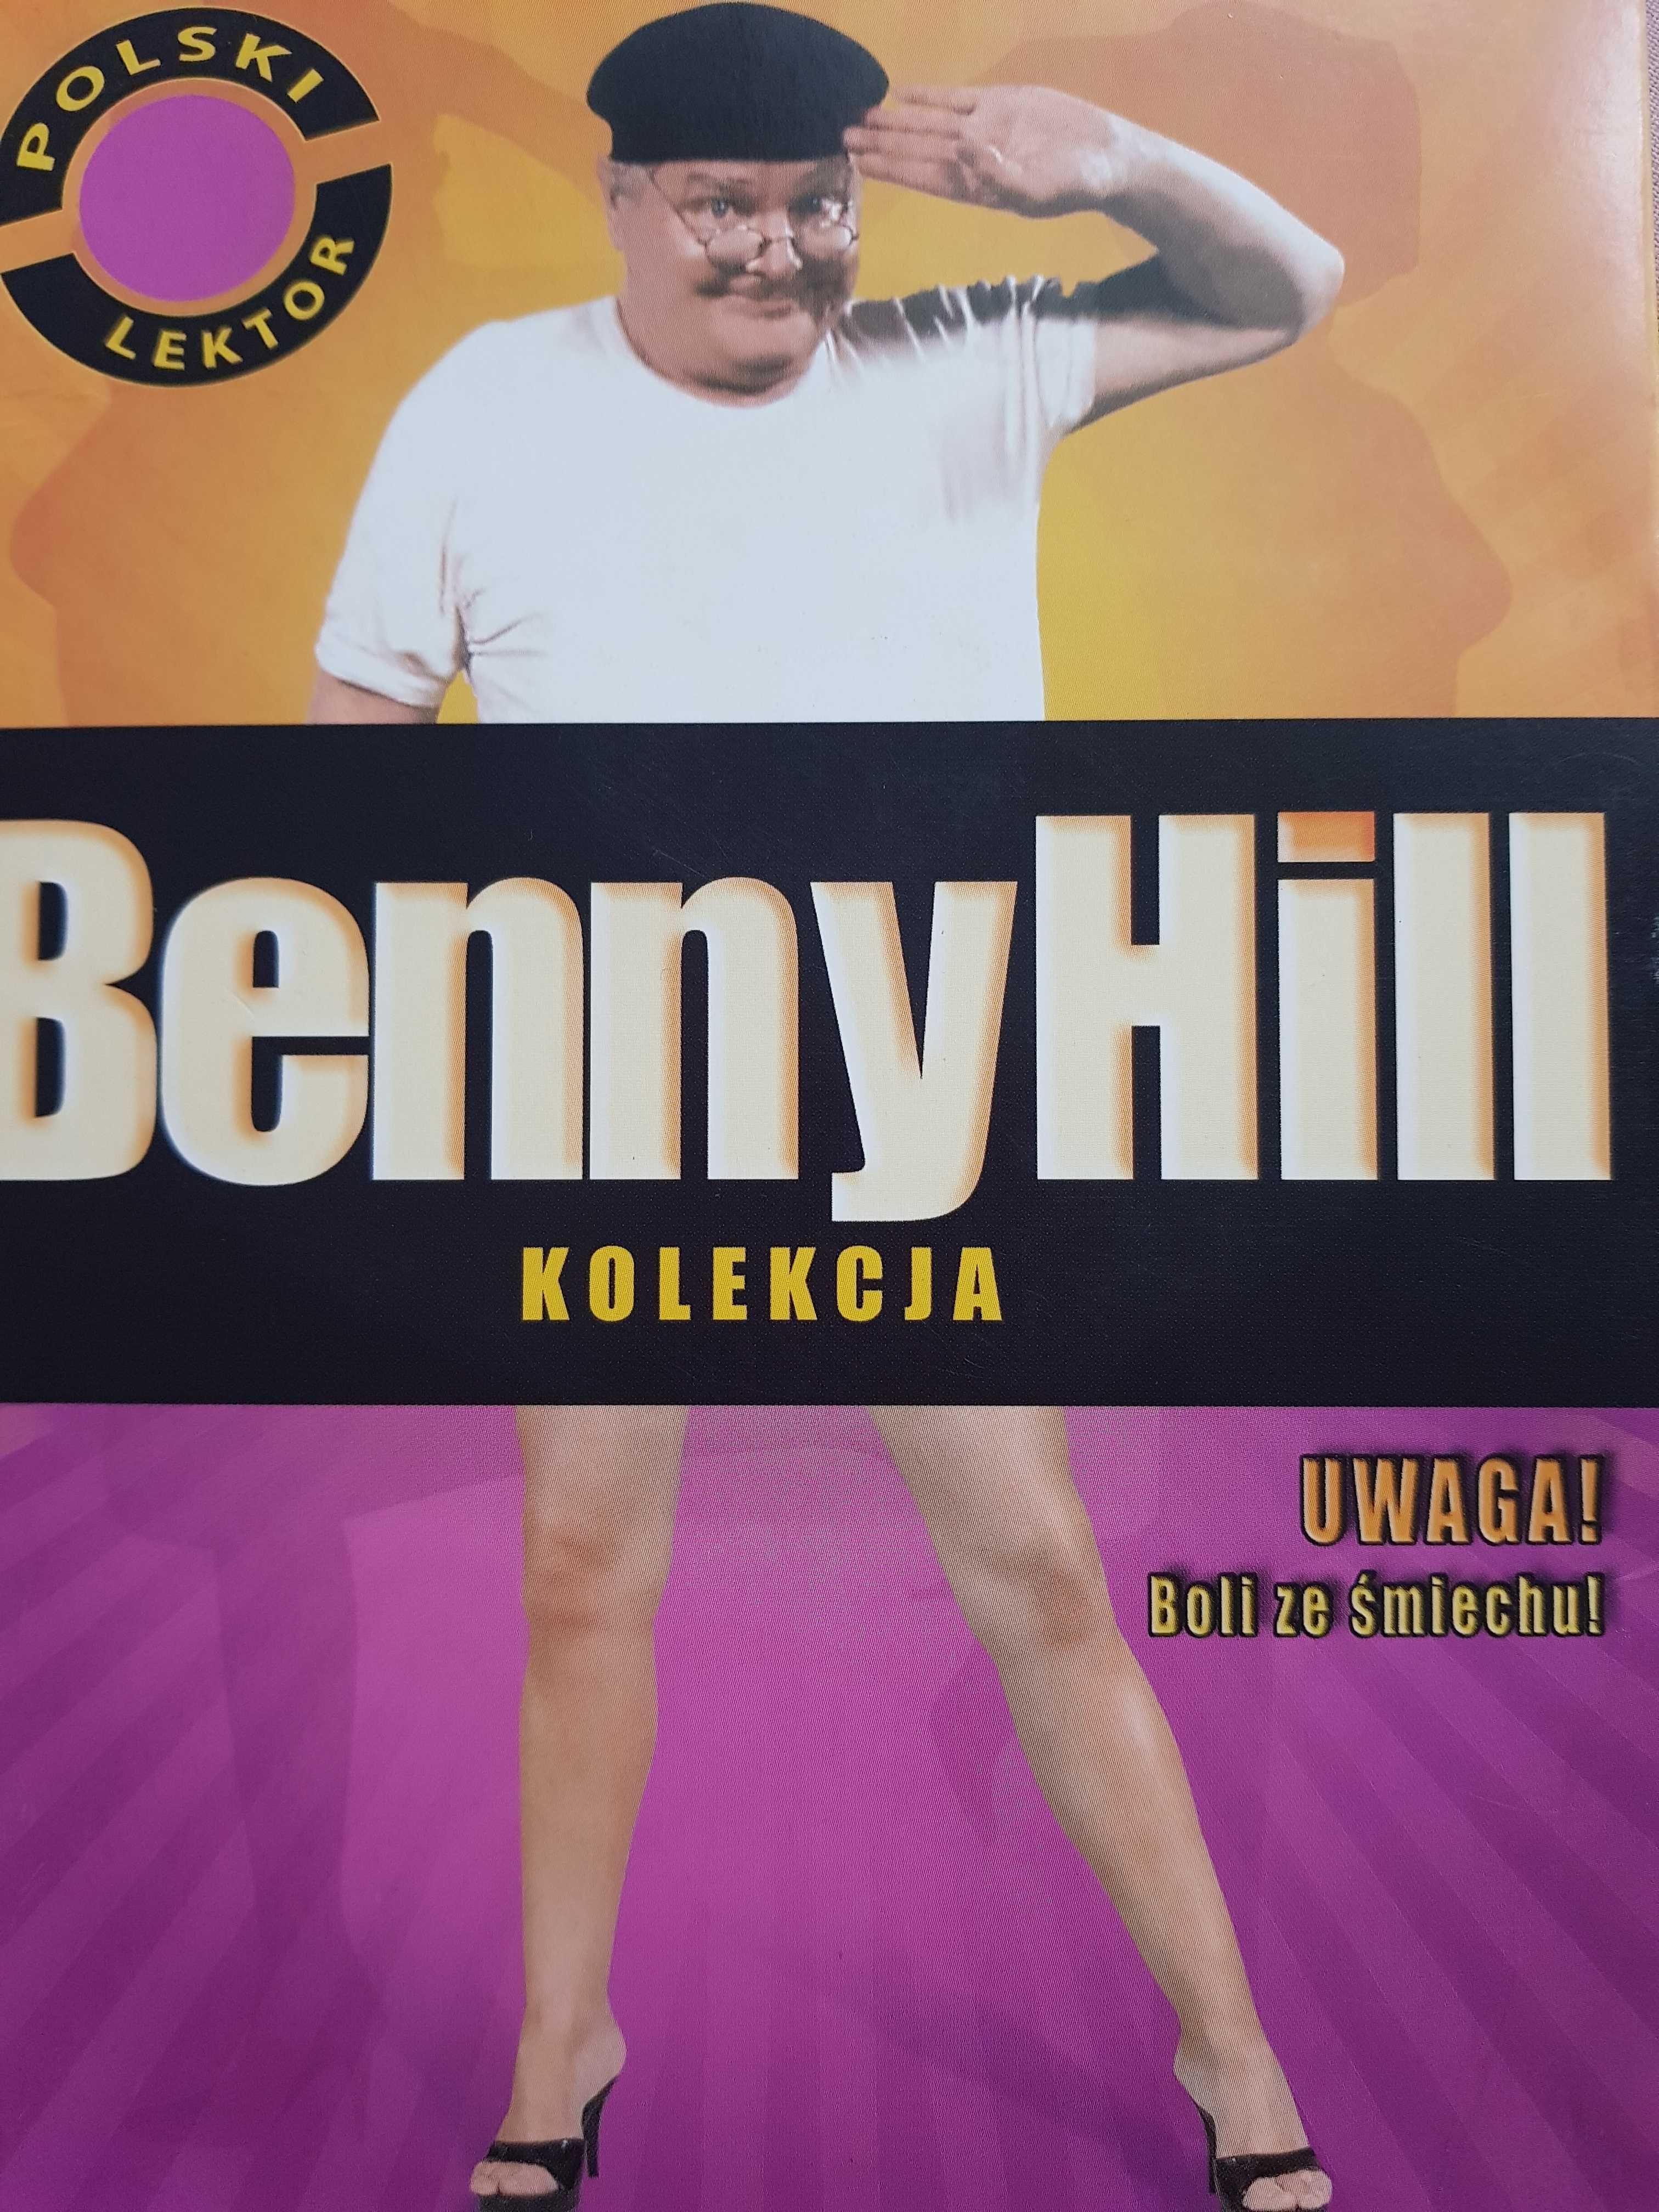 Benny Hill kolekcja  vcd